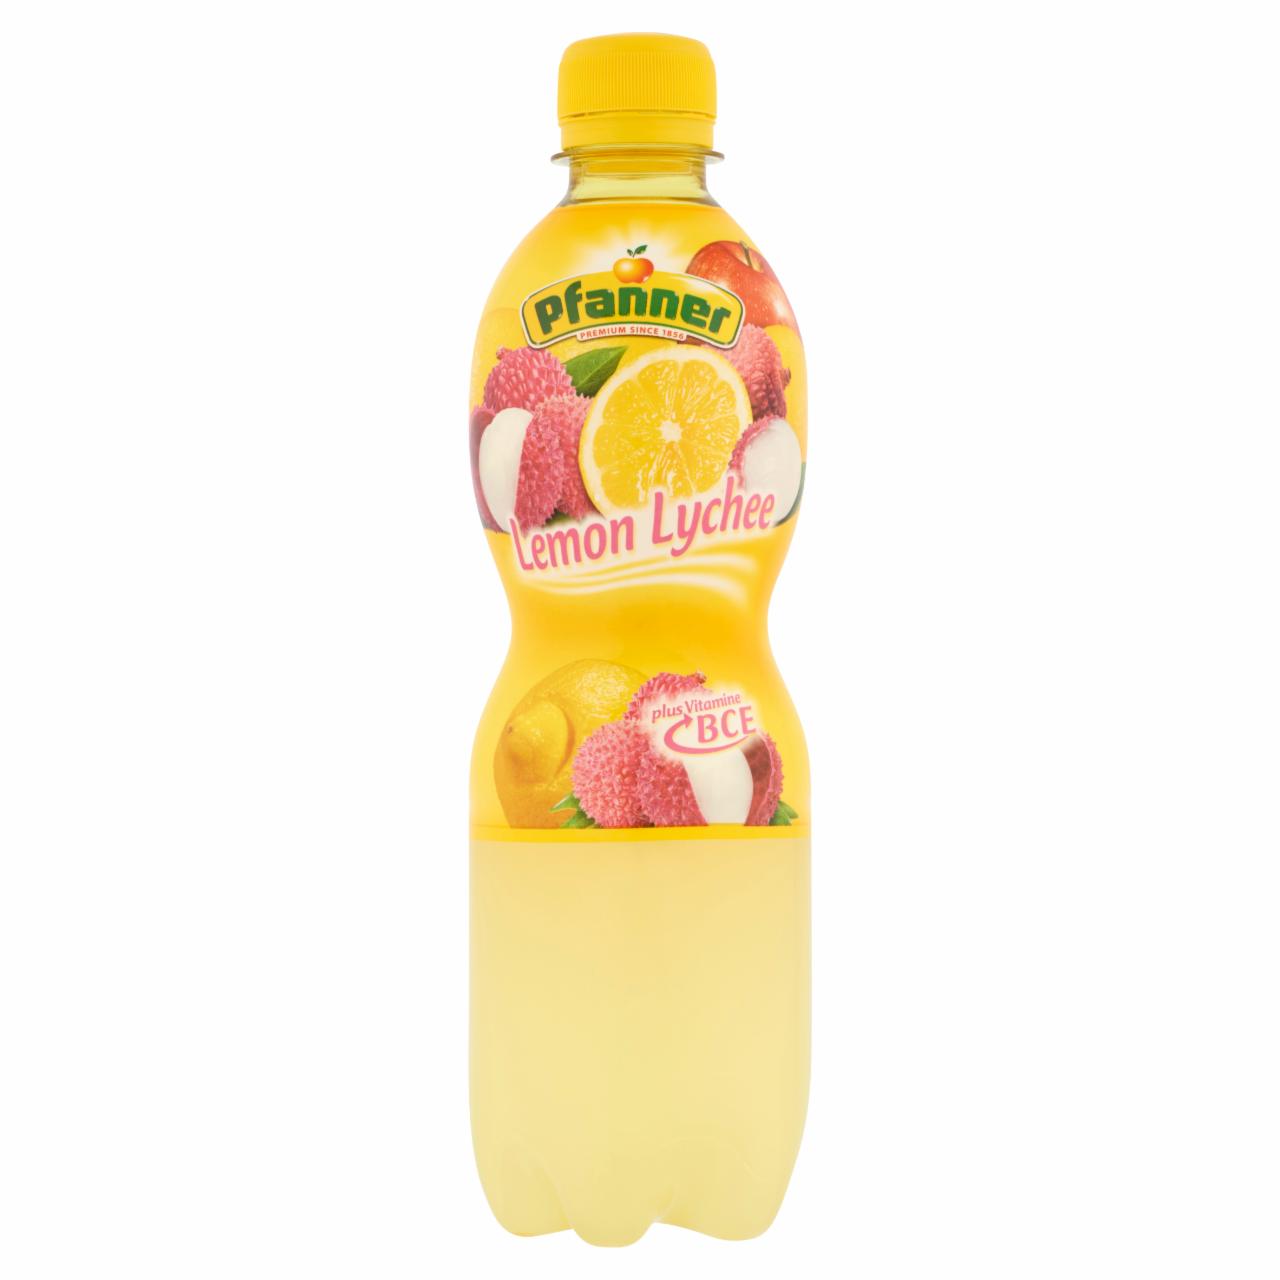 Képek - Pfanner vegyes gyümölcsital lemon-lychee ízesítéssel 0,5 l